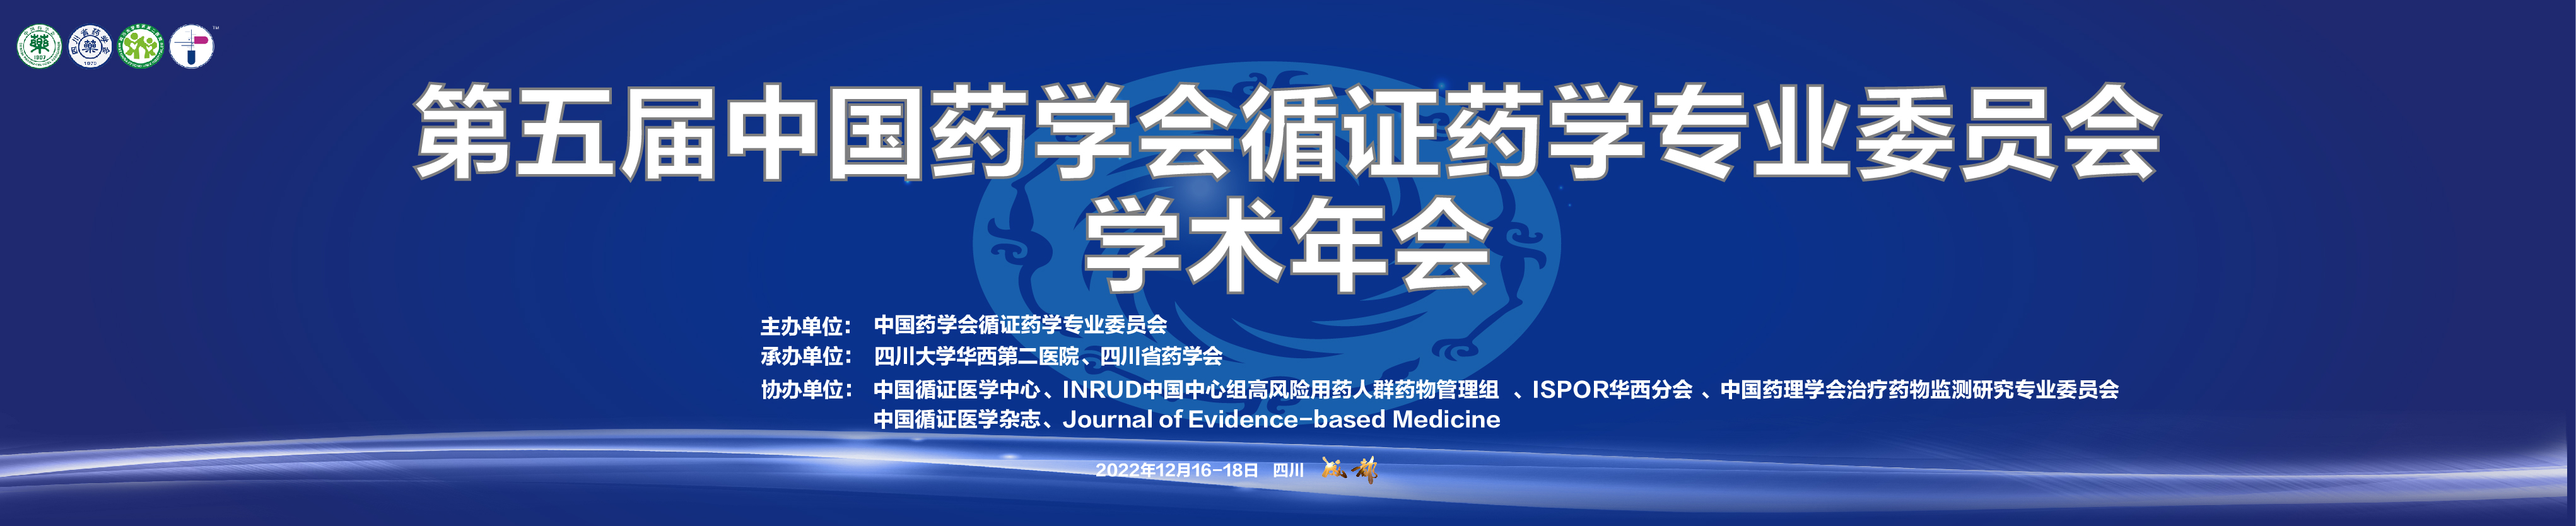 第五届中国药学会循证药学专业委员会学术年会